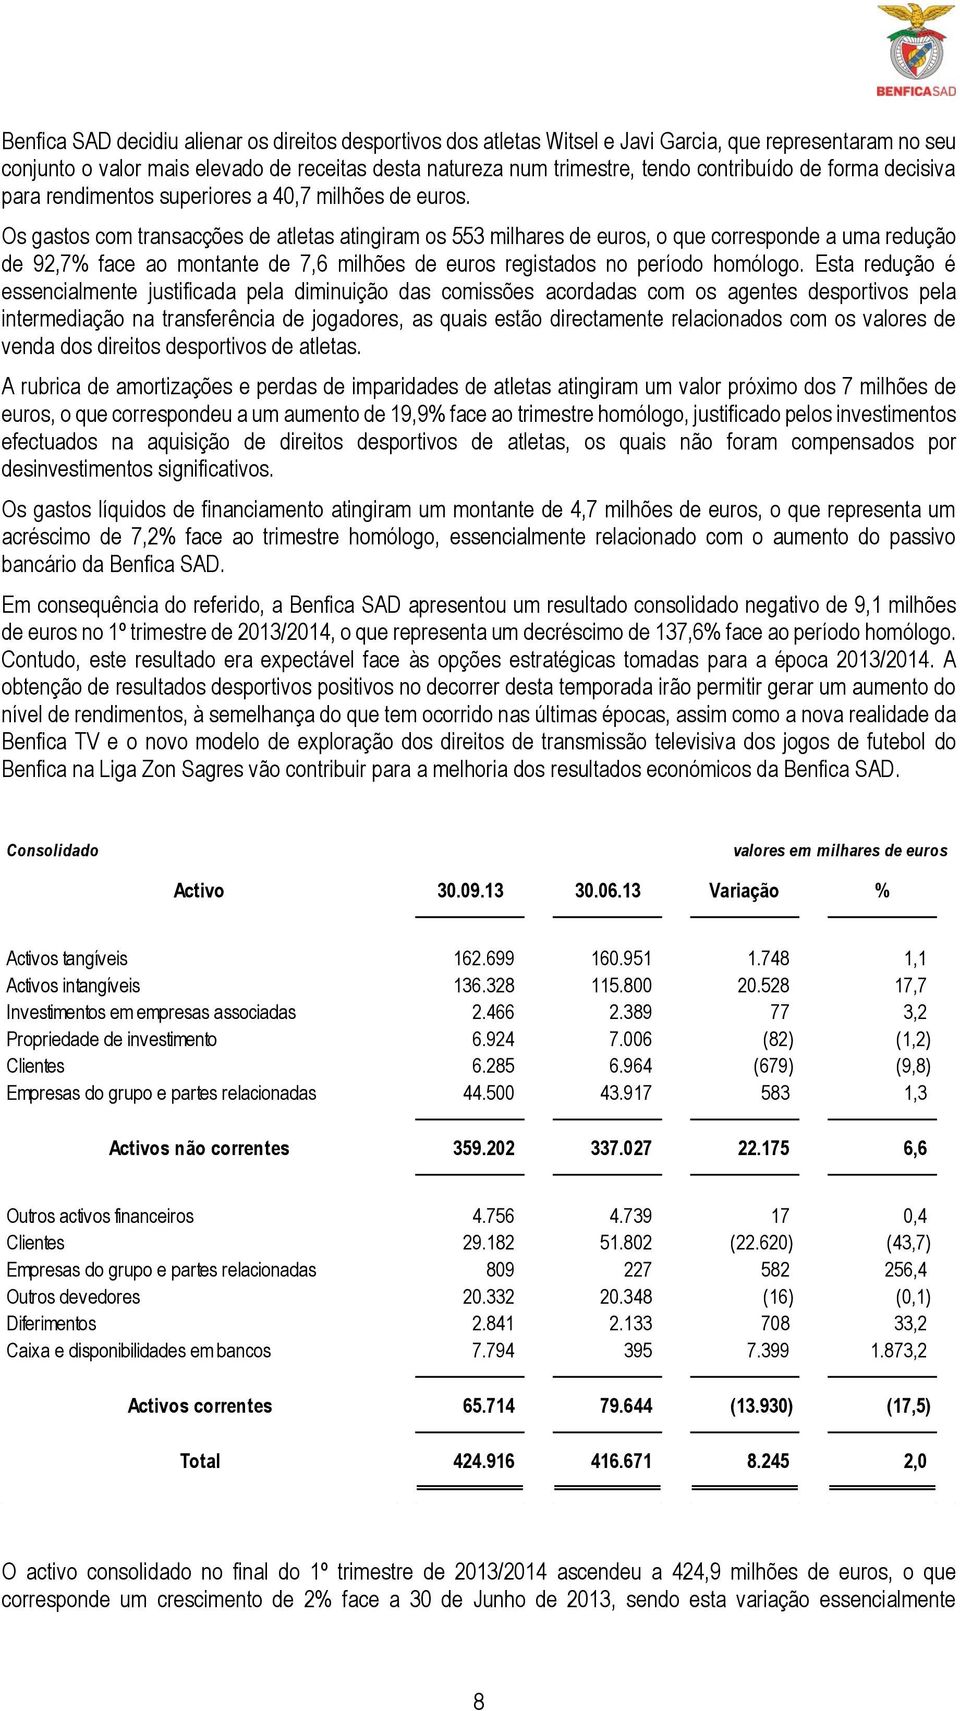 Os gastos com transacções de atletas atingiram os 553 milhares de euros, o que corresponde a uma redução de 92,7% face ao montante de 7,6 milhões de euros registados no período homólogo.